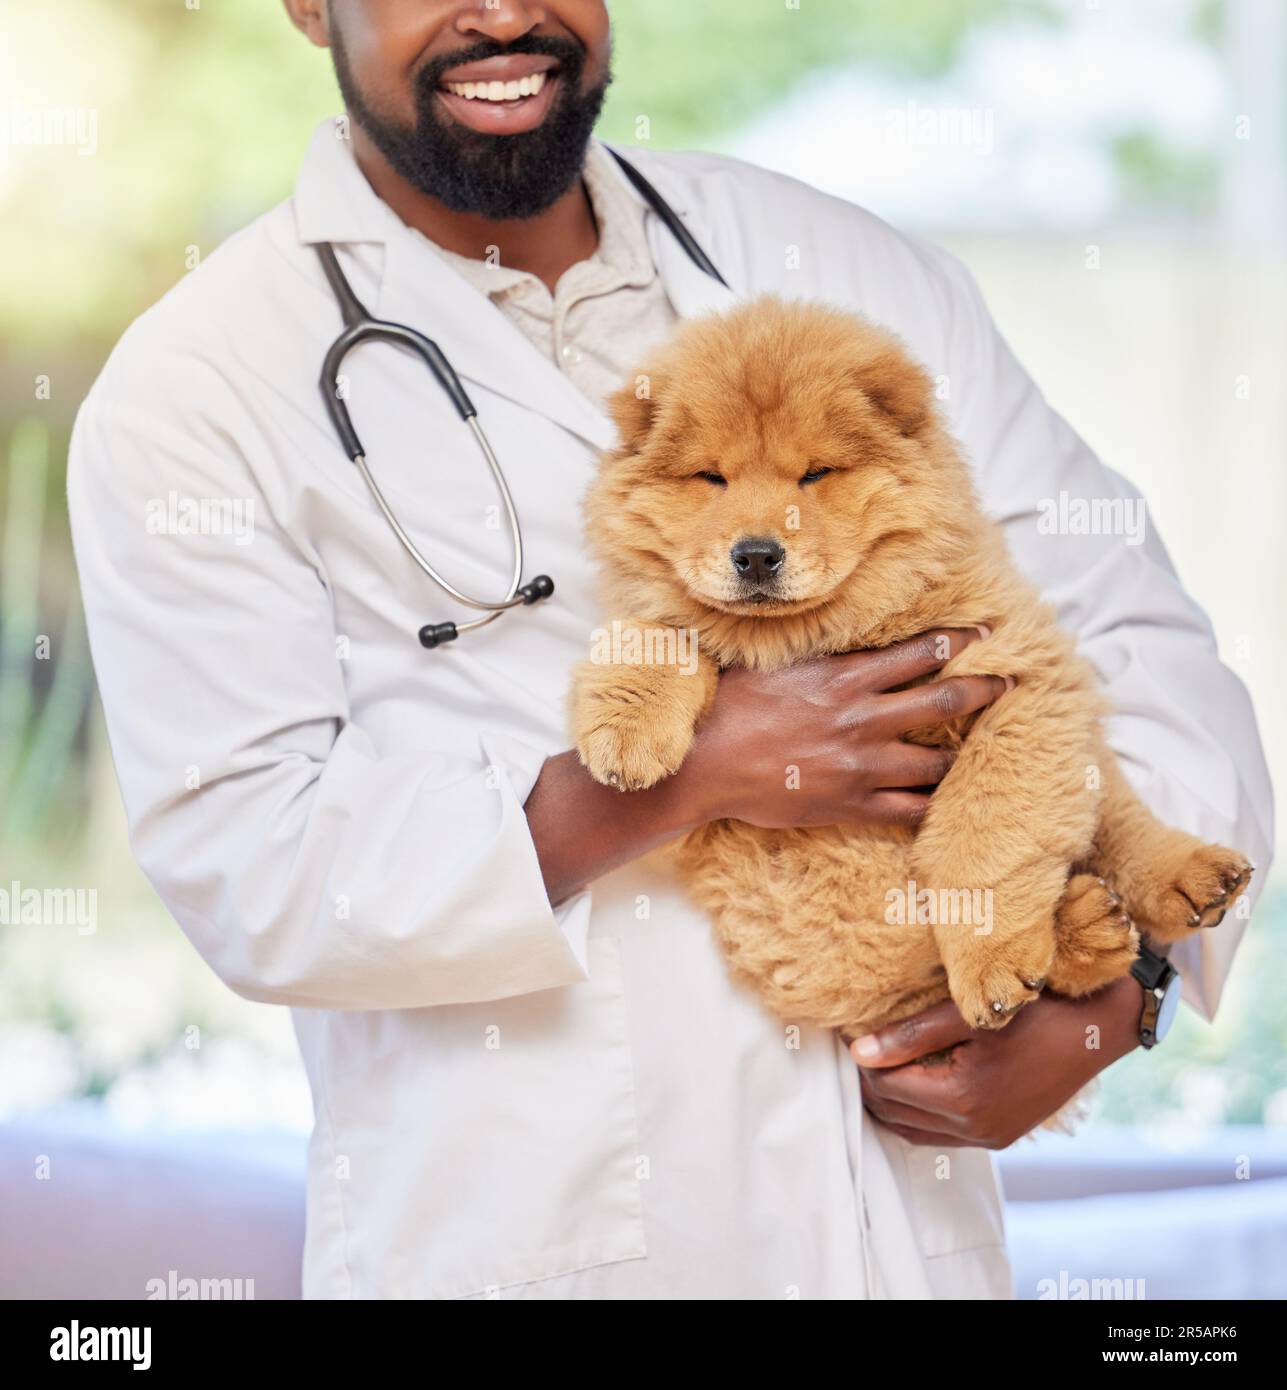 Schwarzer Mann, Tierarzt und Welpe in einer Klinik, medizinische und tierische Unterstützung mit einem Lächeln. Glücklicher afrikanischer männlicher und tierärztlicher Angestellter mit einem Stockfoto